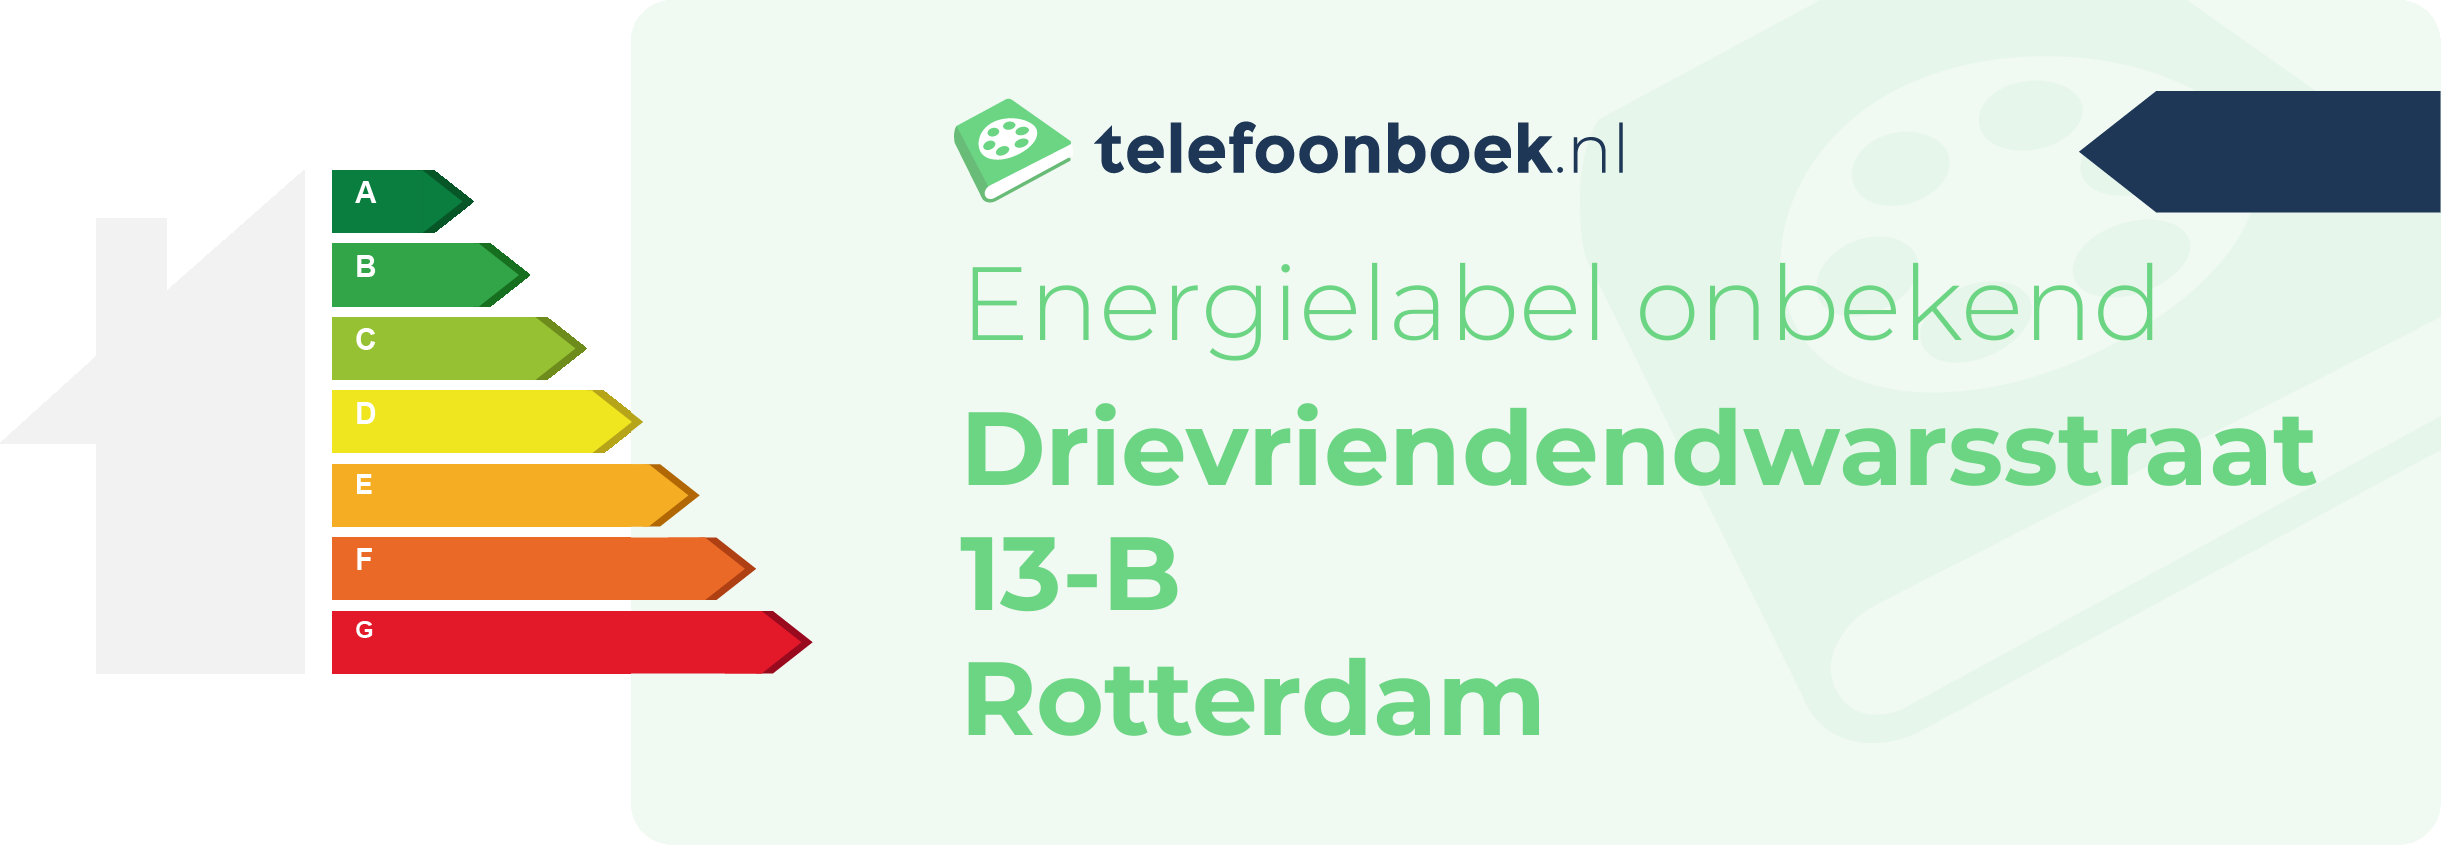 Energielabel Drievriendendwarsstraat 13-B Rotterdam